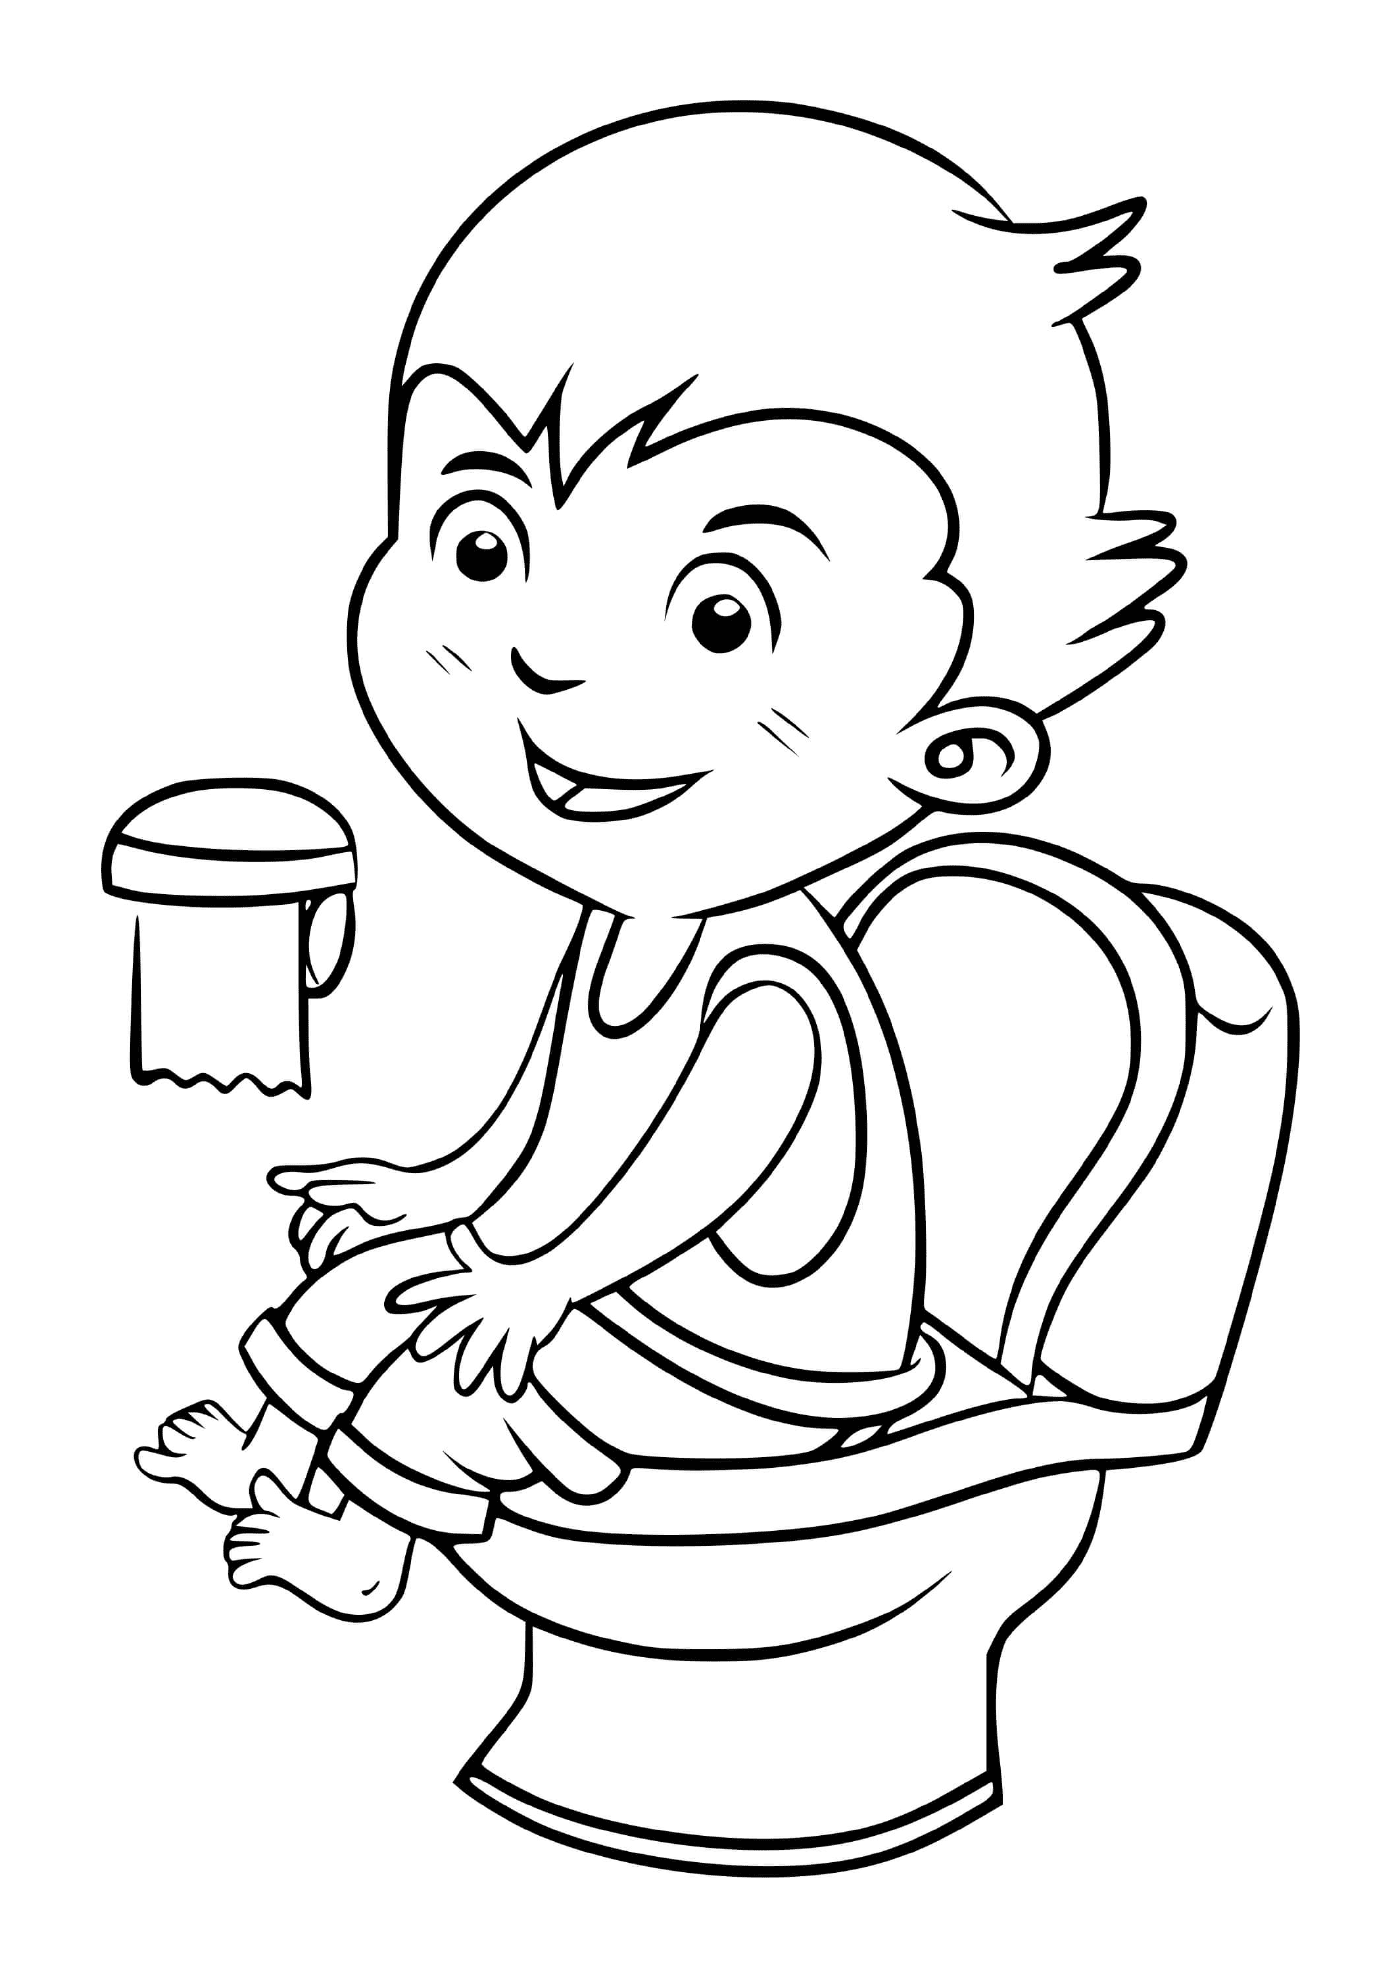  एक बच्चे को साफ रहने के लिए बाथरूम जाना जाता है 